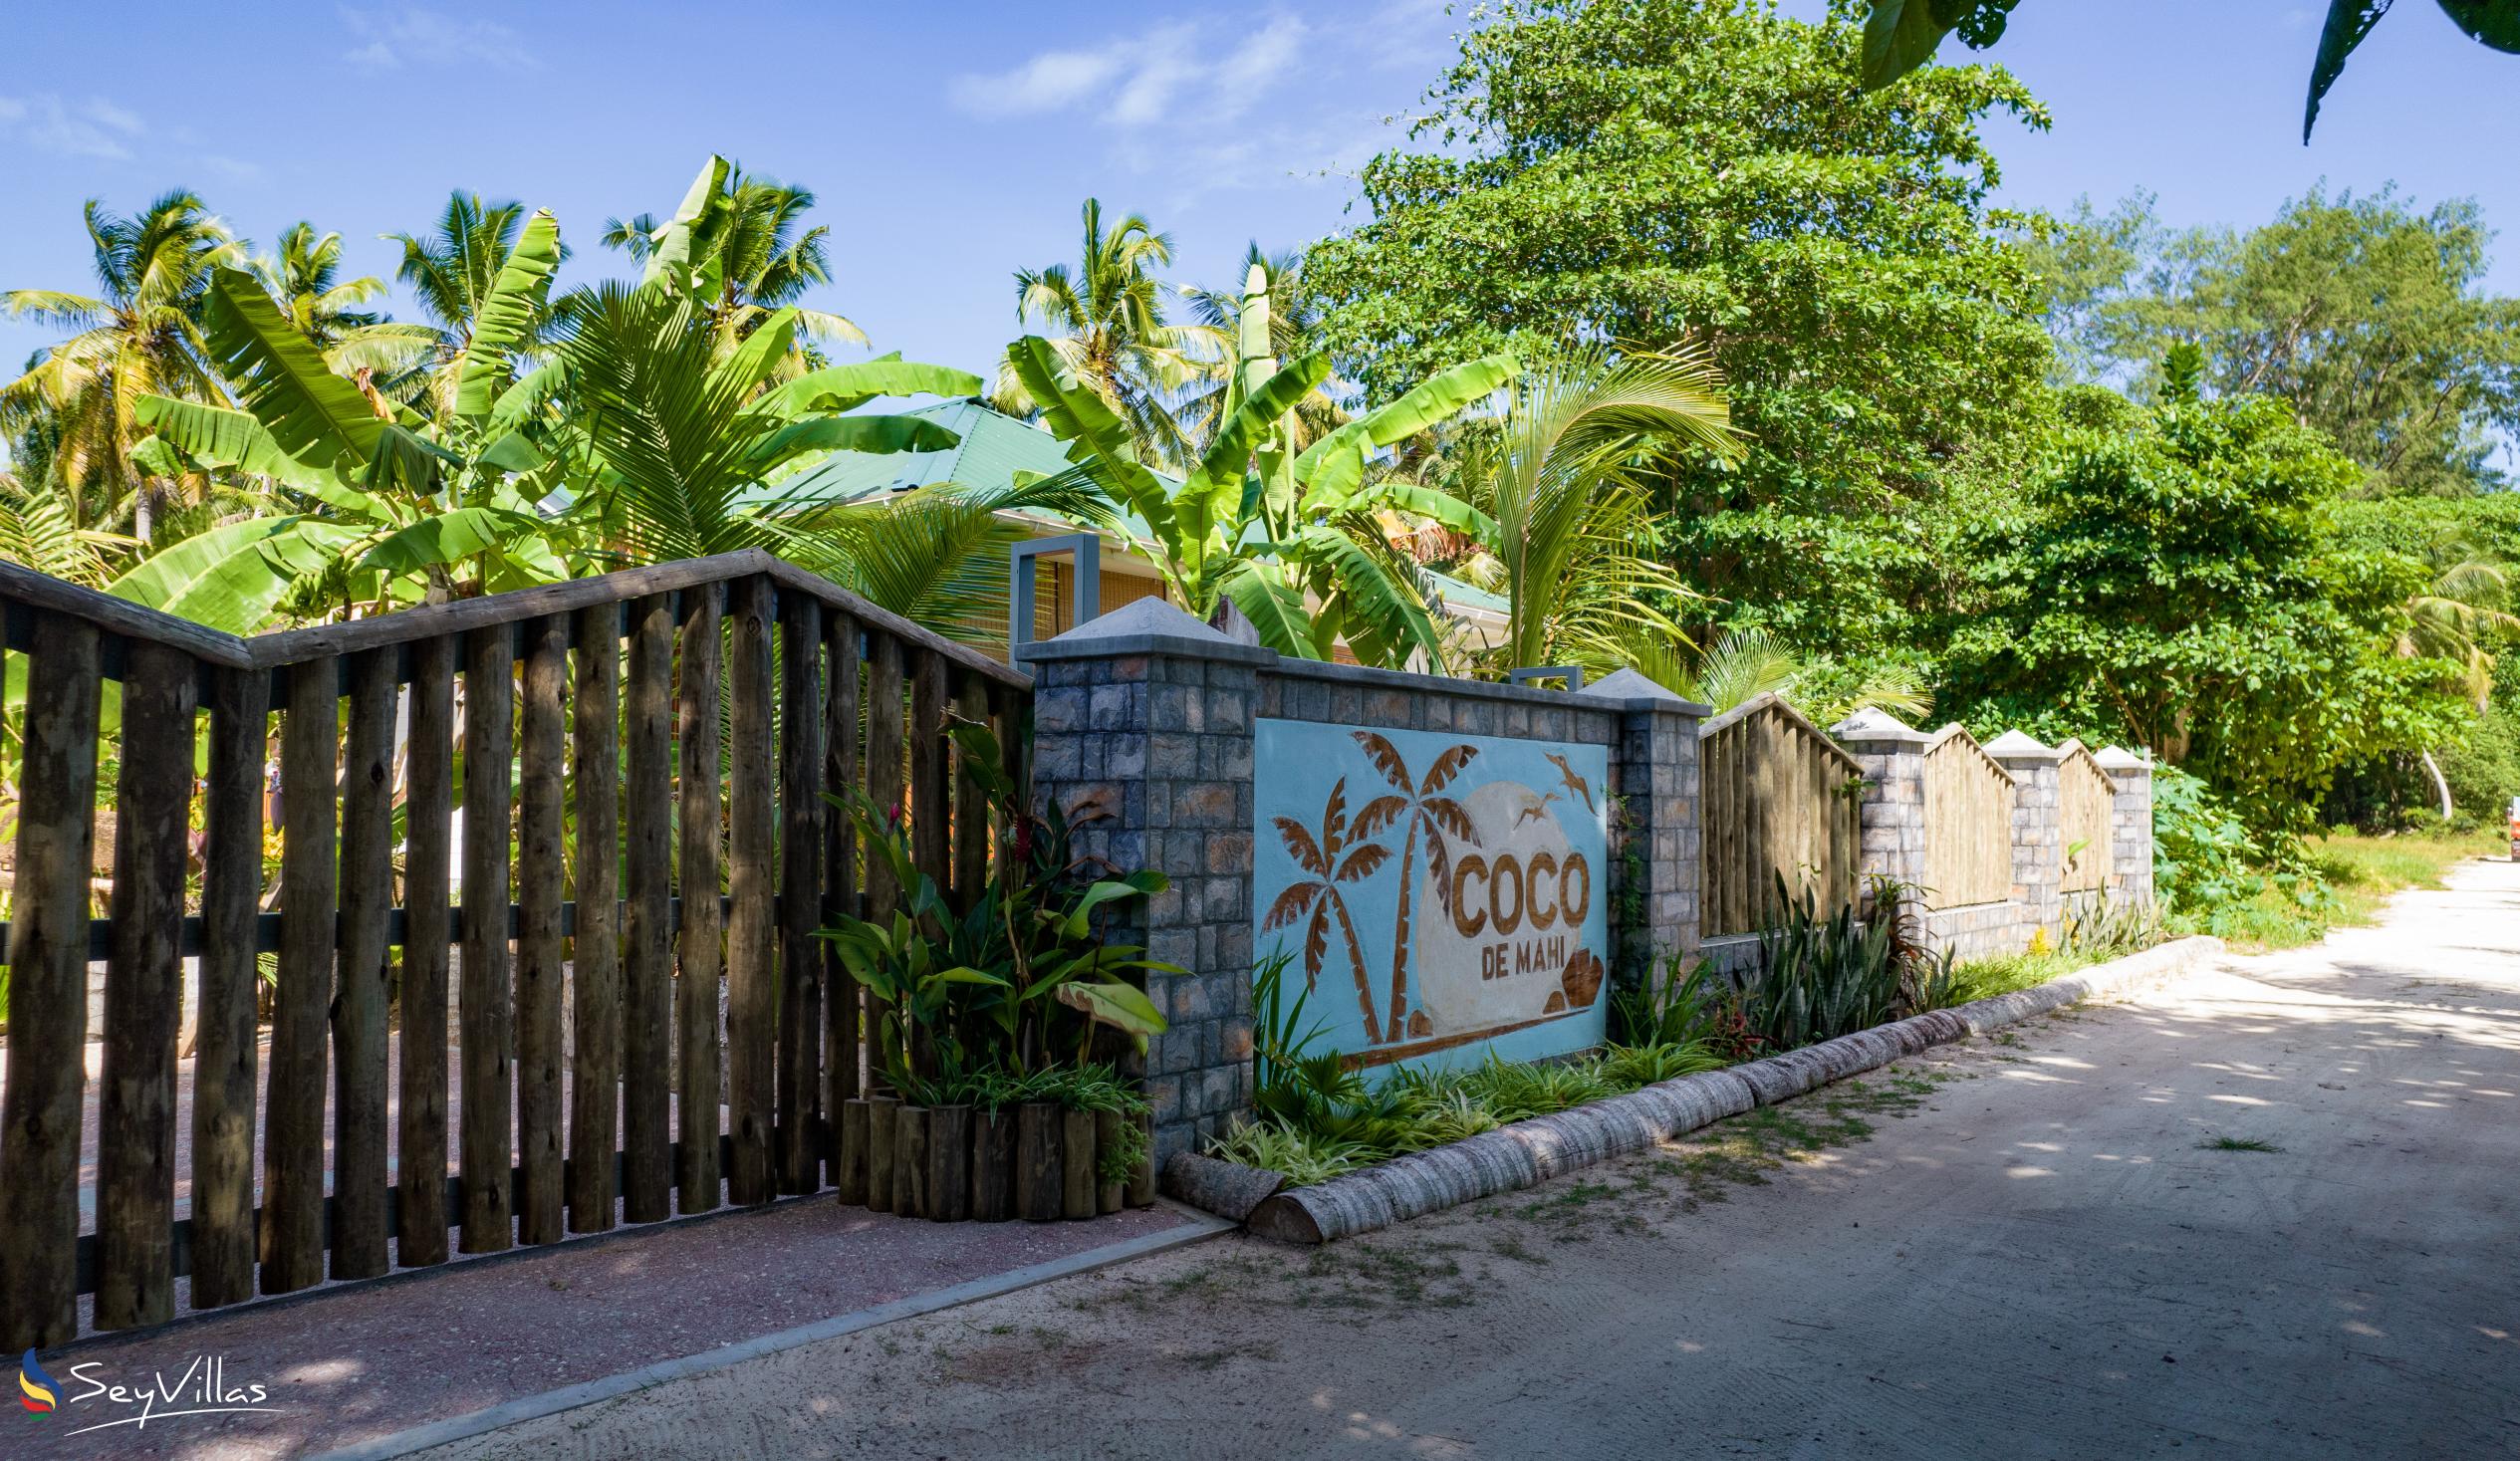 Foto 31: Coco de Mahi - Location - La Digue (Seychelles)